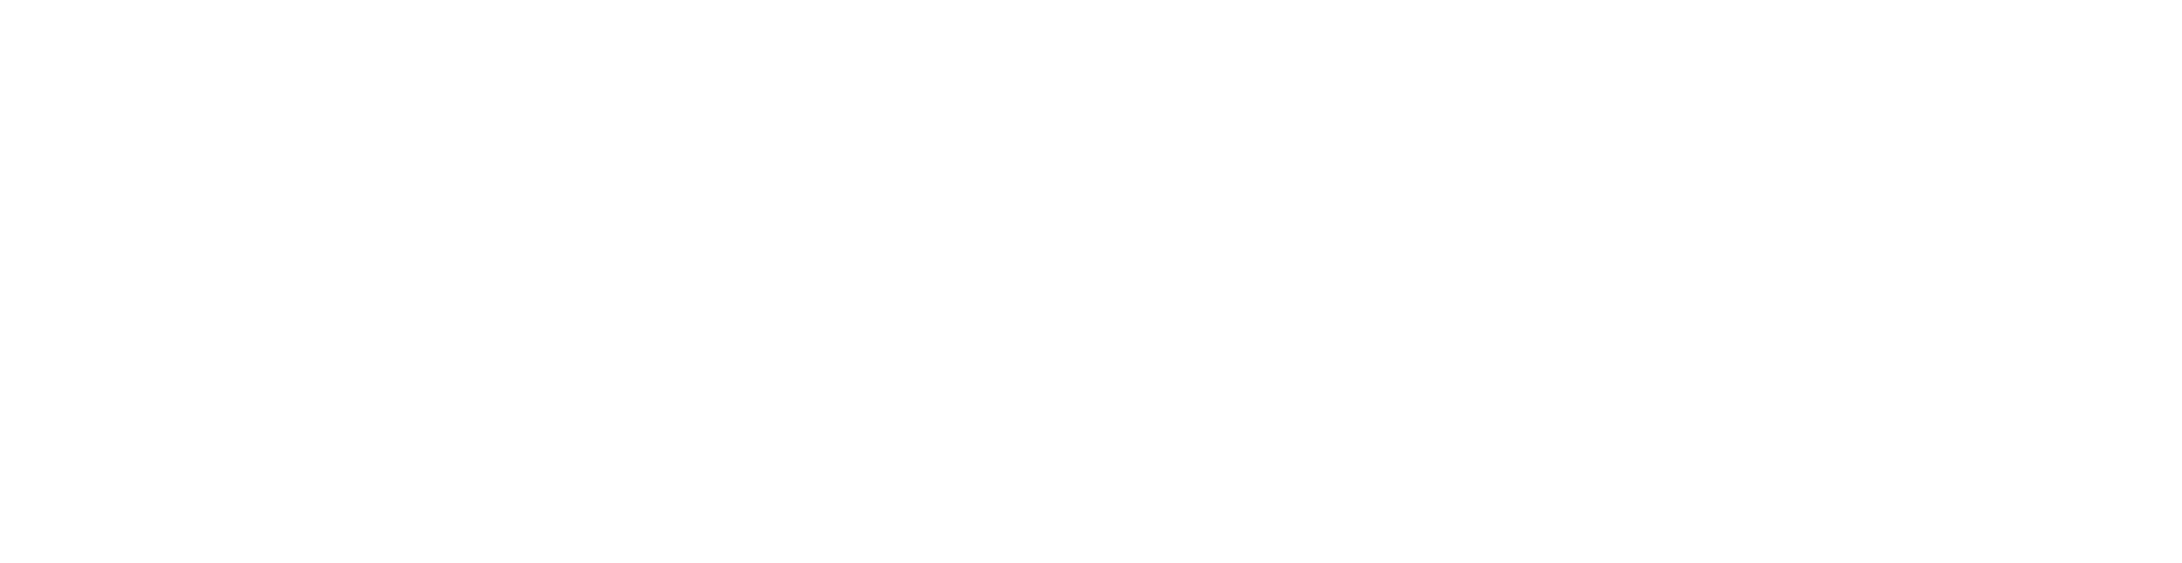 duorsum logo wit